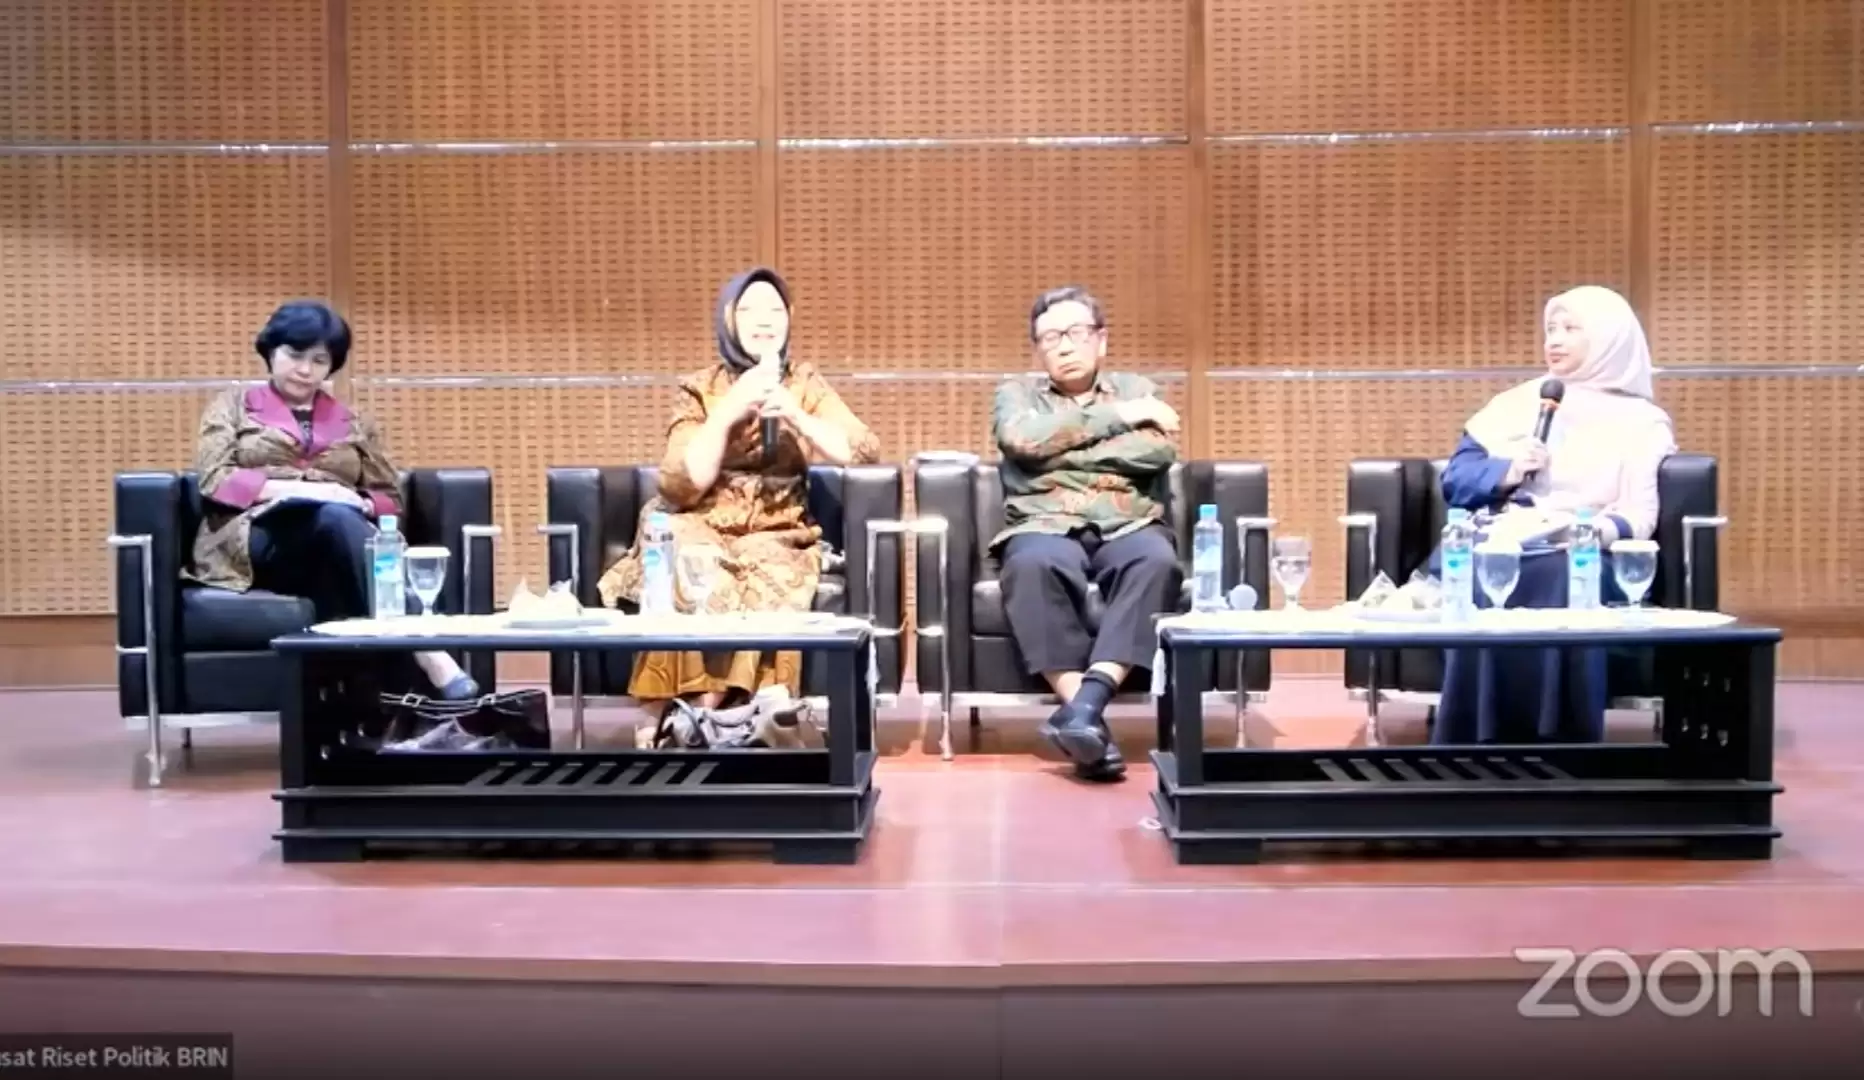 Tangkapan Layar - Peneliti BRIN, Siti Zuhro menyampaikan pemaparannya dalam acara diskusi pusat politik BRIN bertajuk “Demokrasi di Ujung Tanduk”, Rabu (7/2)